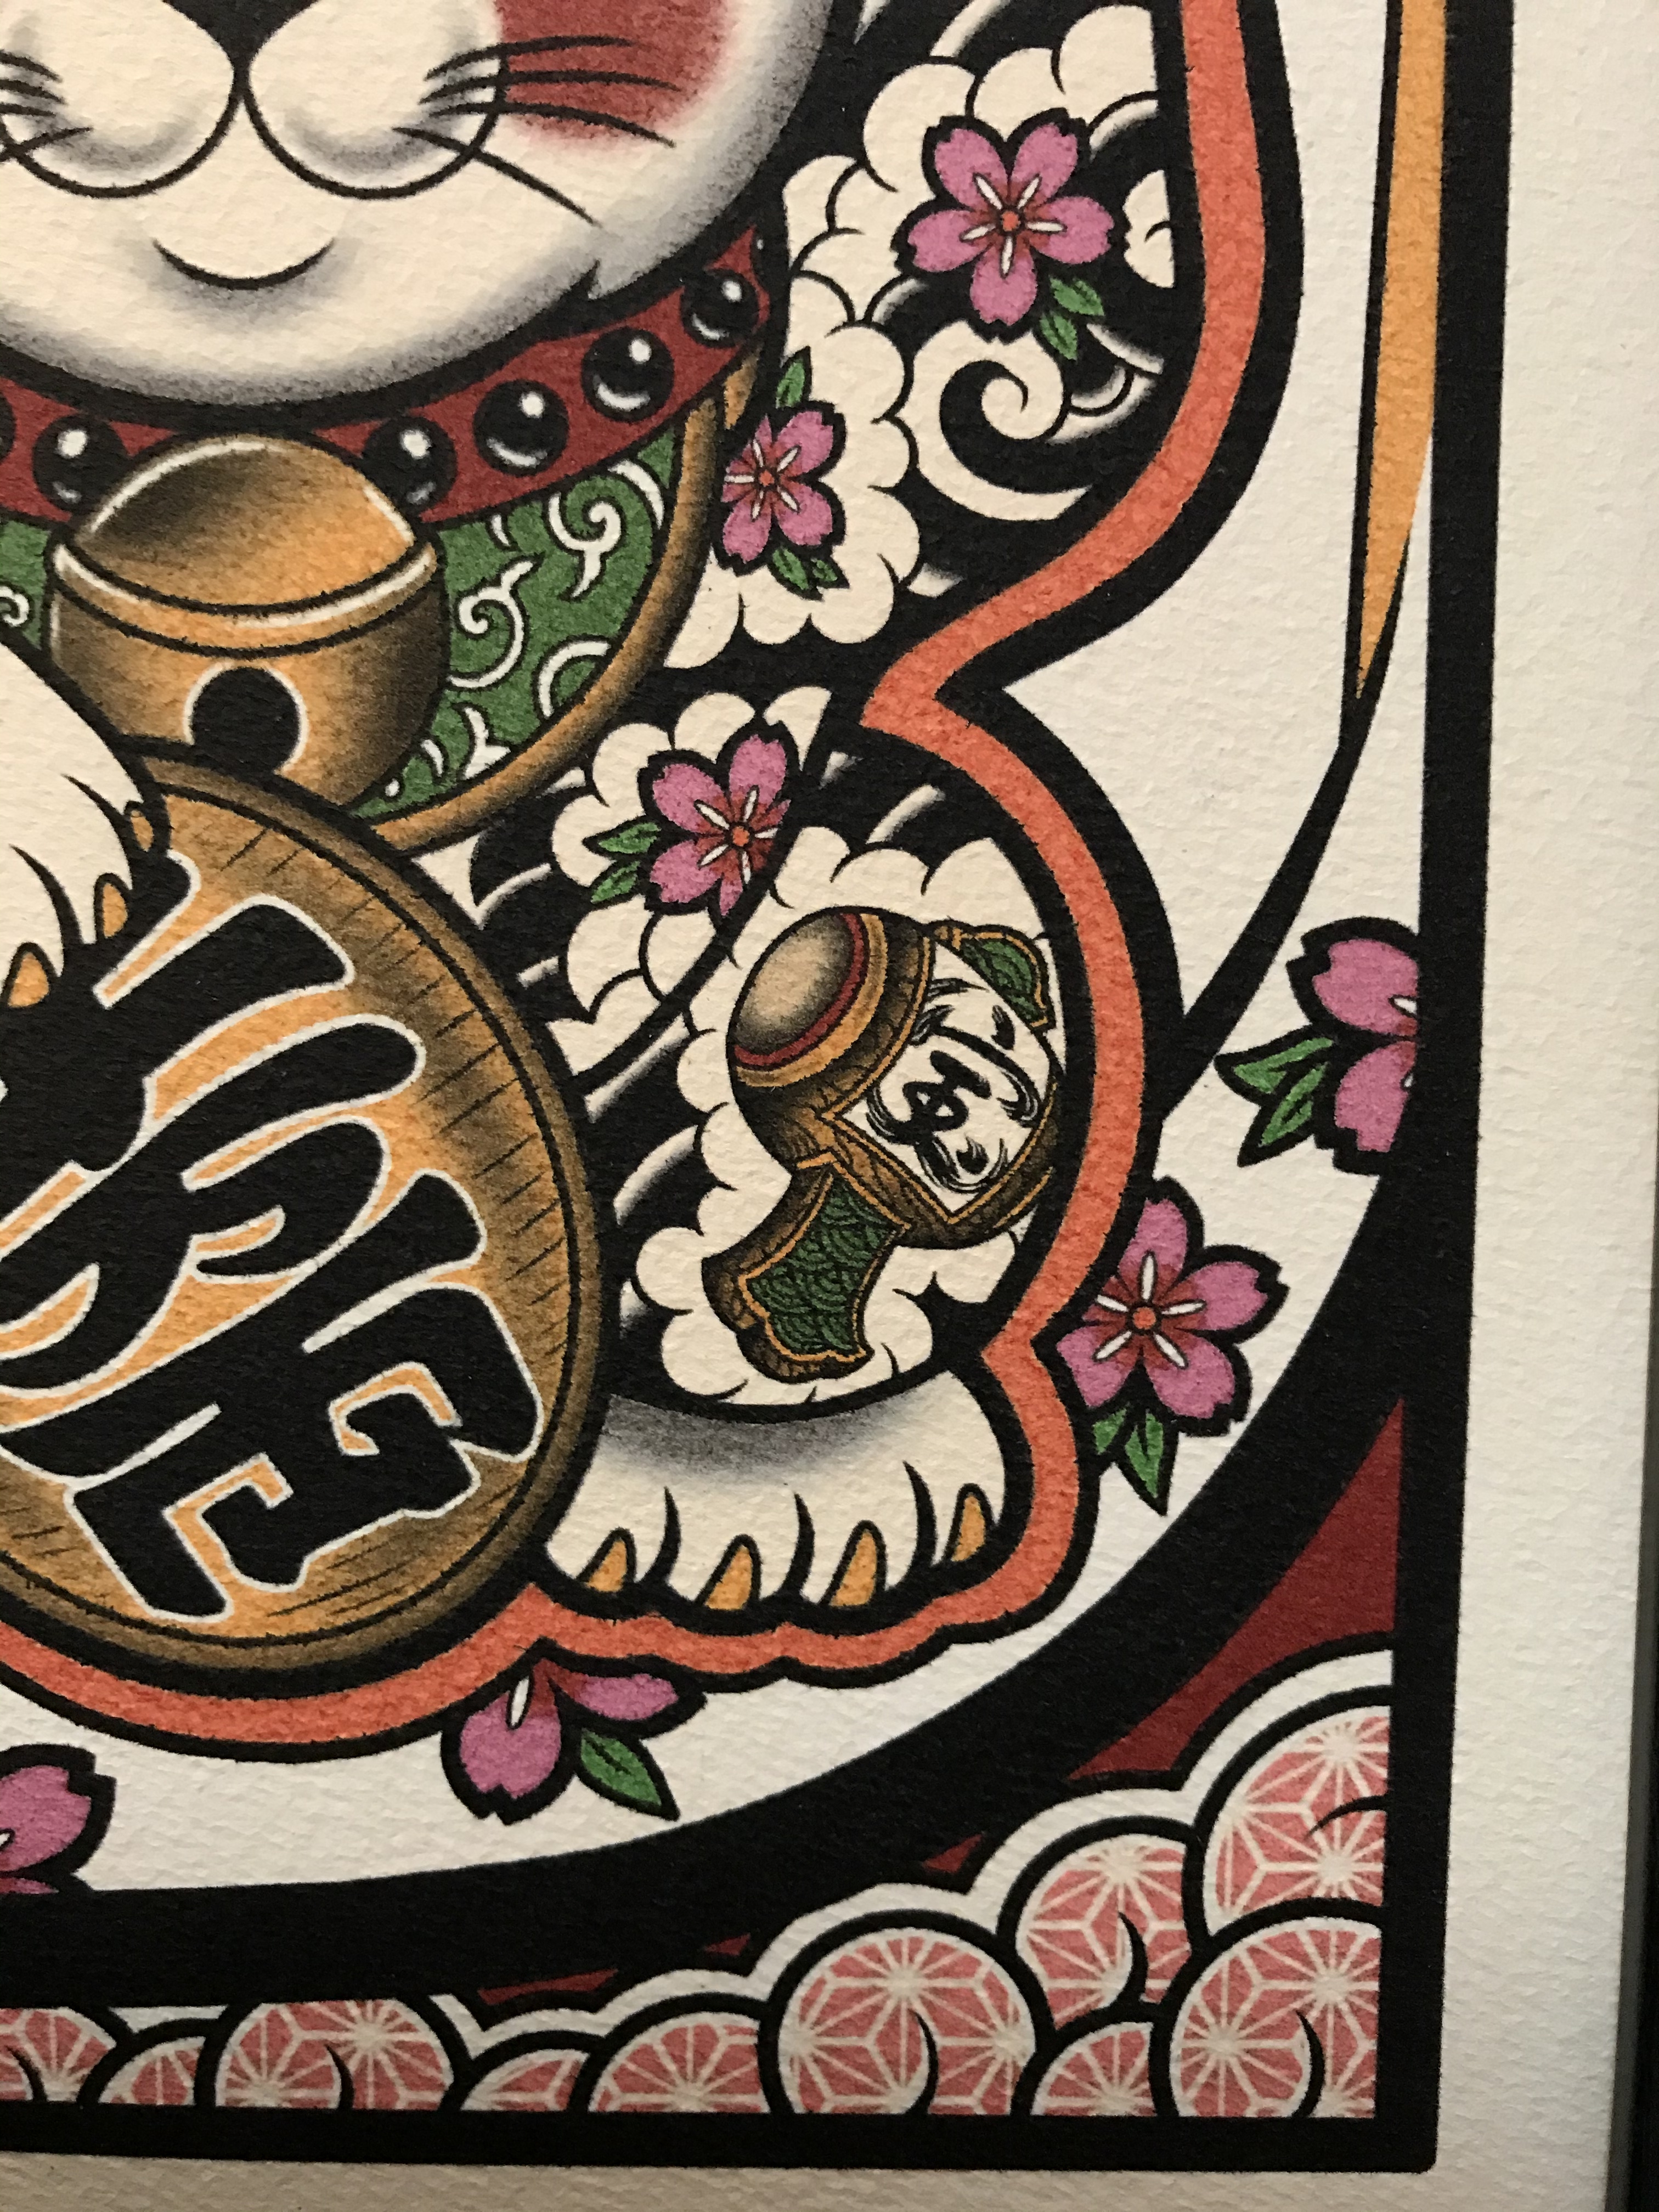 かわいい タトゥー イラスト 刺青 開運 招き猫 桜吹雪 打出の小槌 黒フレーム Iichi ハンドメイド クラフト作品 手仕事品の通販